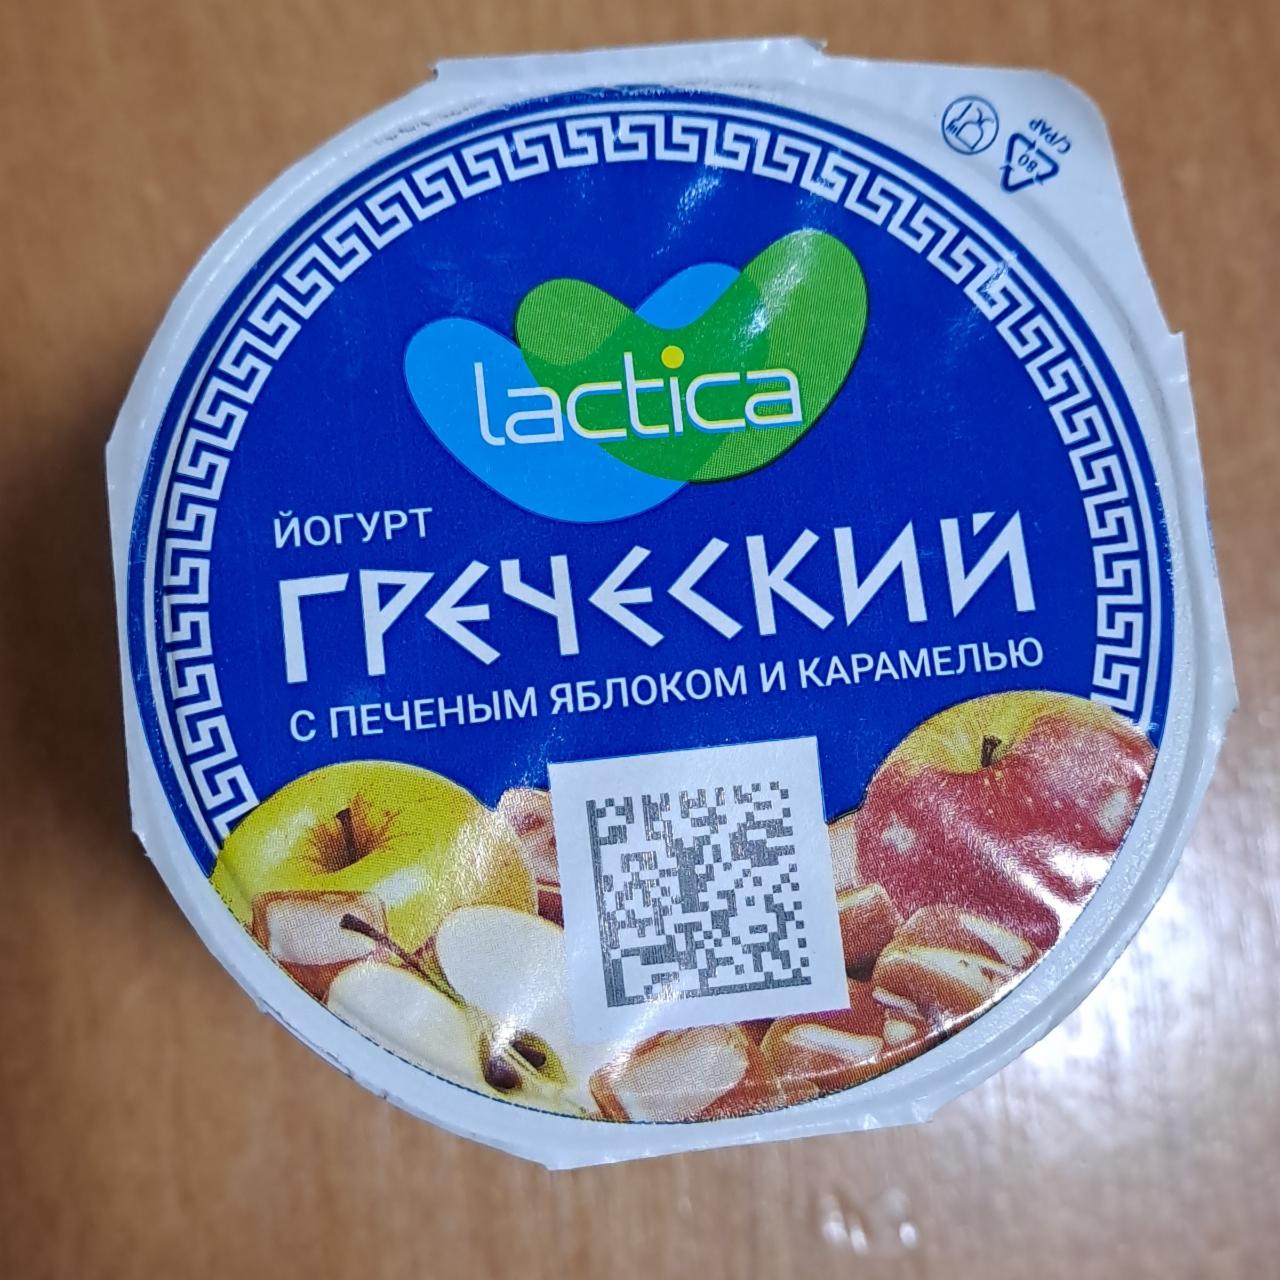 Фото - Греческий йогурт с печеным яблоком Lactica